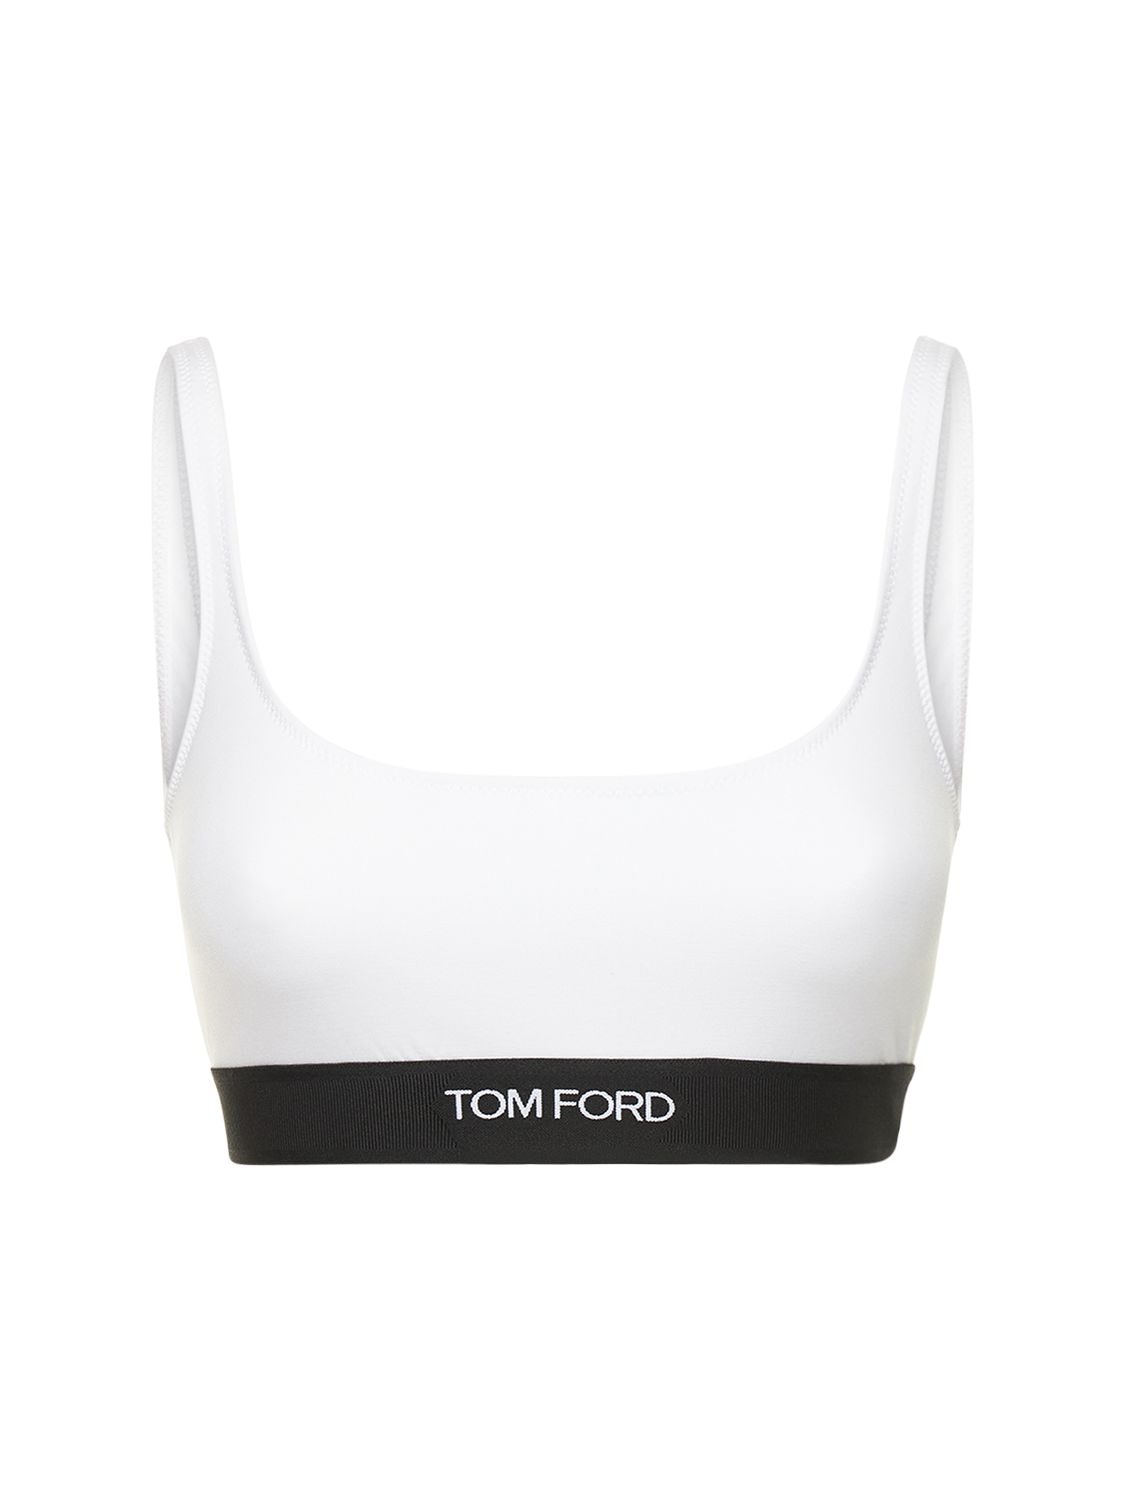 Tom Ford Bra In White